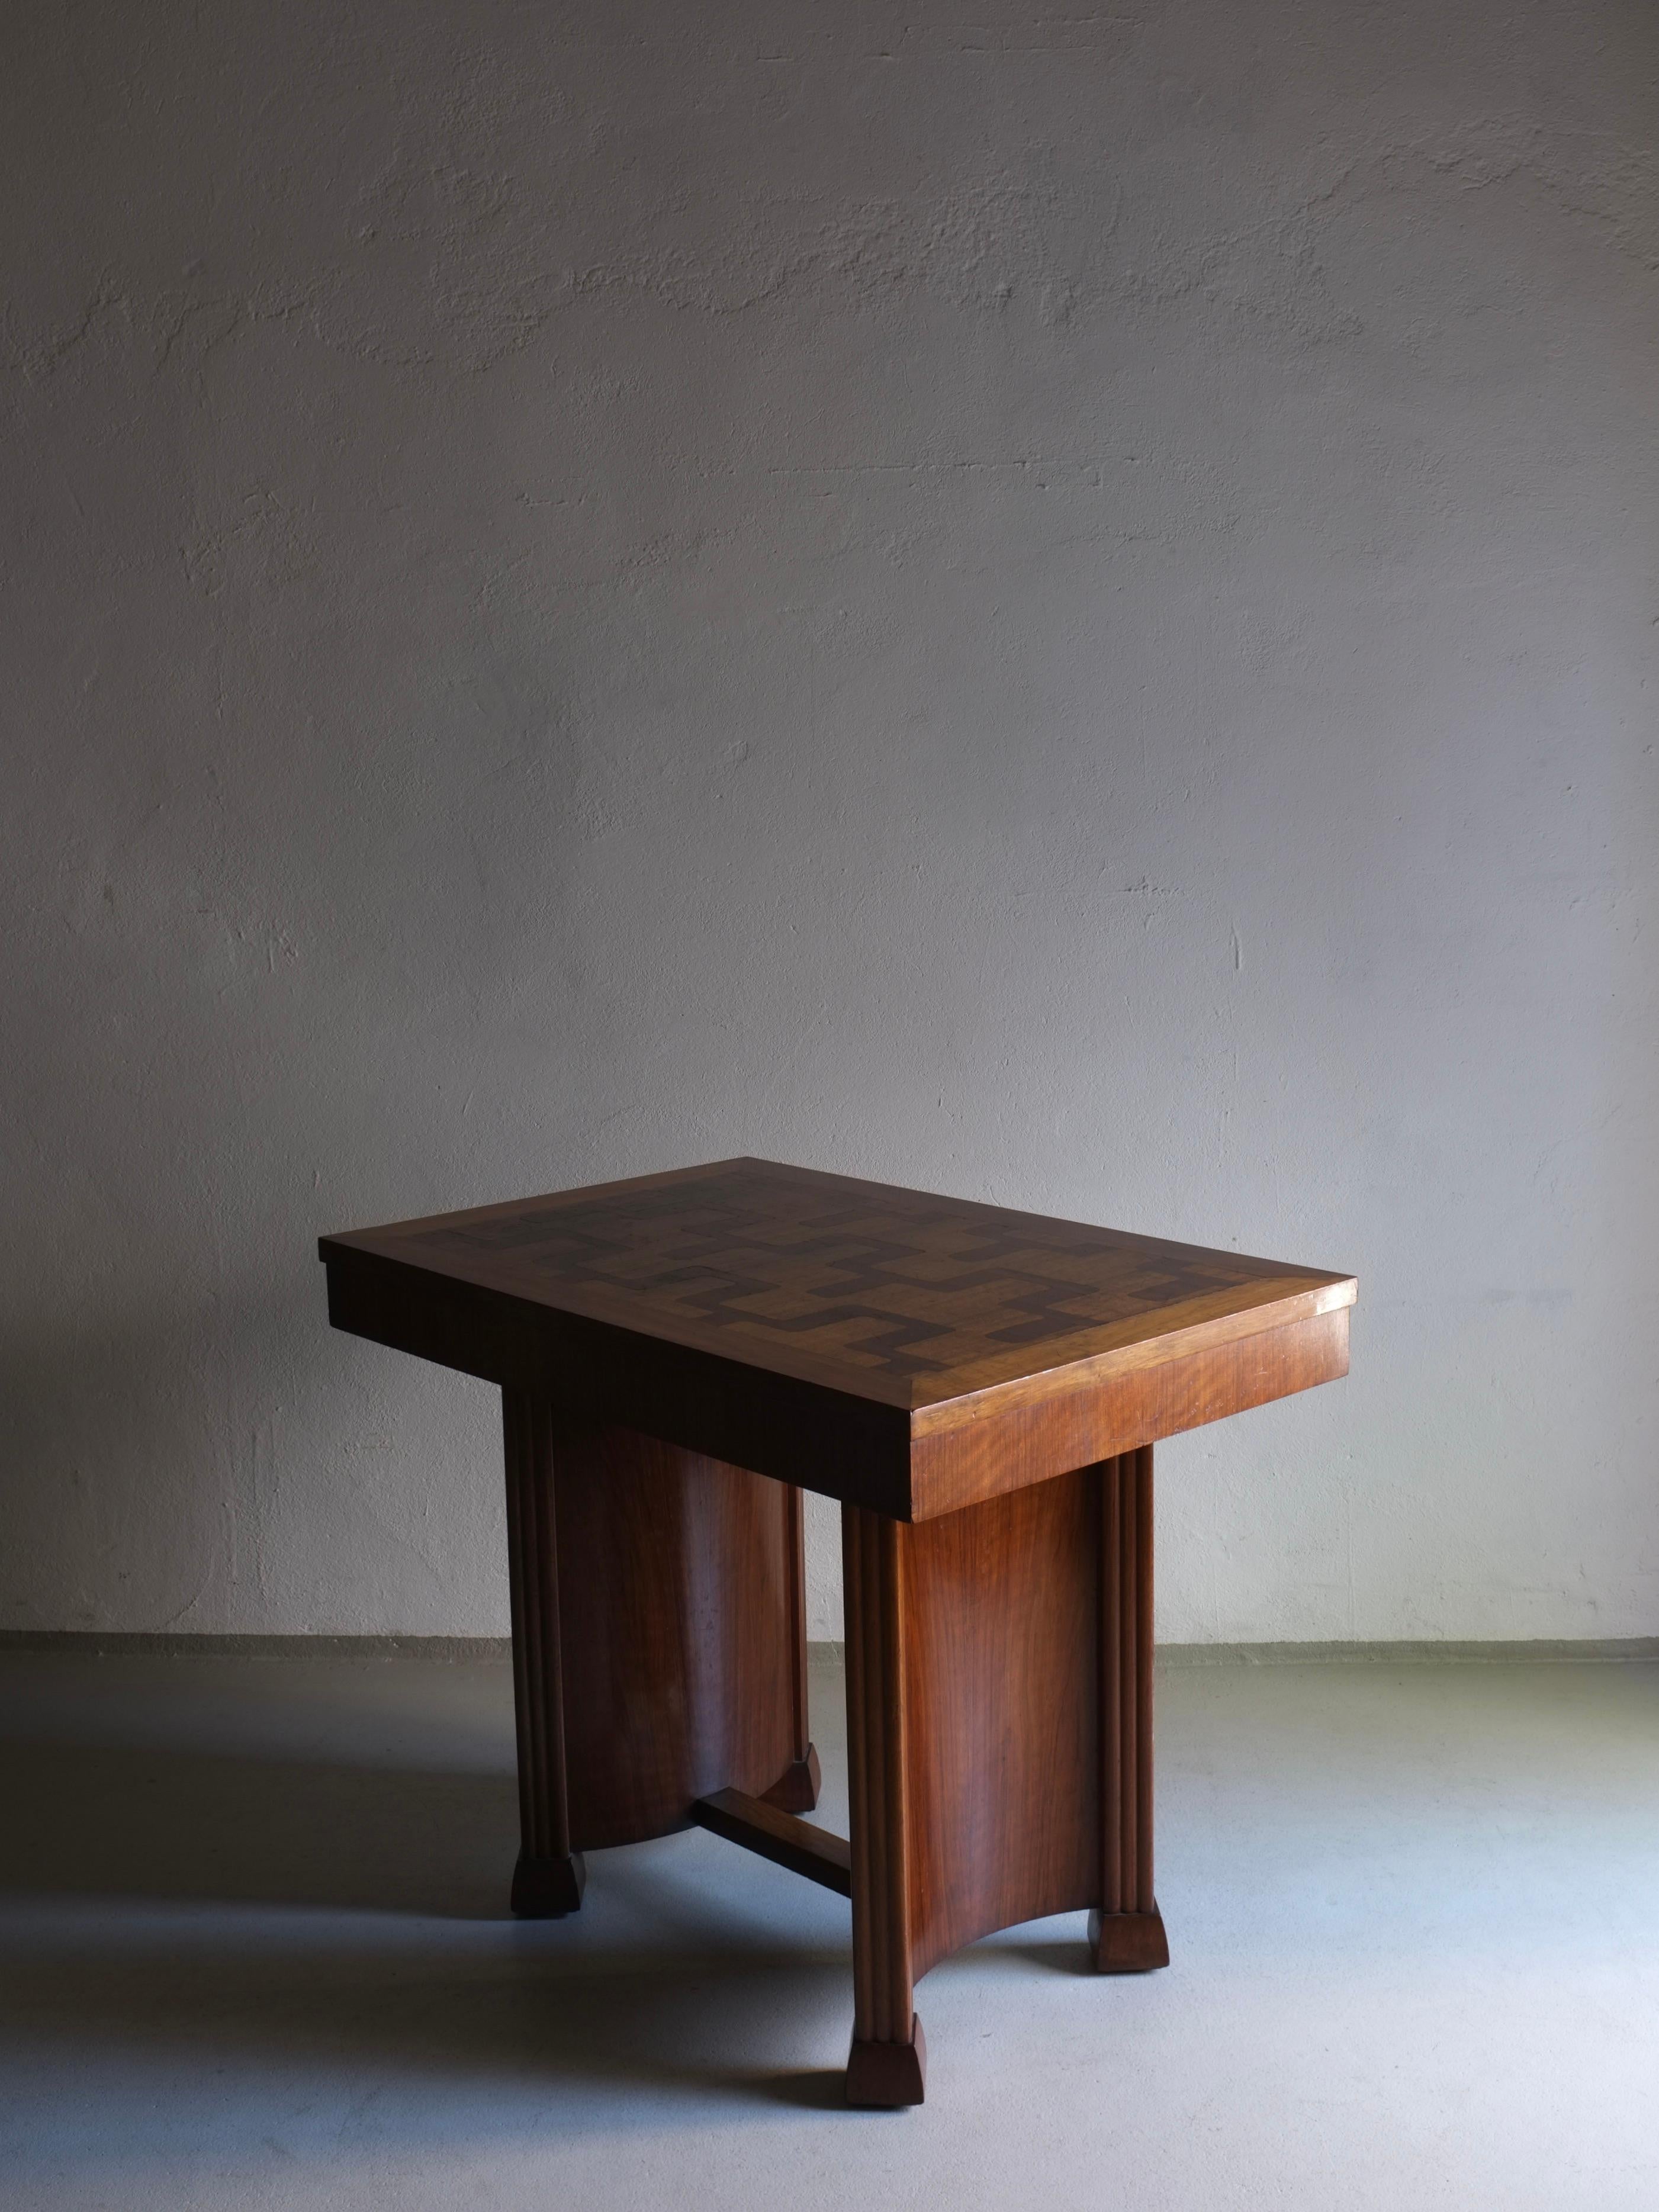 Table d'appoint Art Déco ou bureau avec détails incrustés.
H 74 cm, H (plateau) 10 cm, L 92 cm, P 61 cm 
